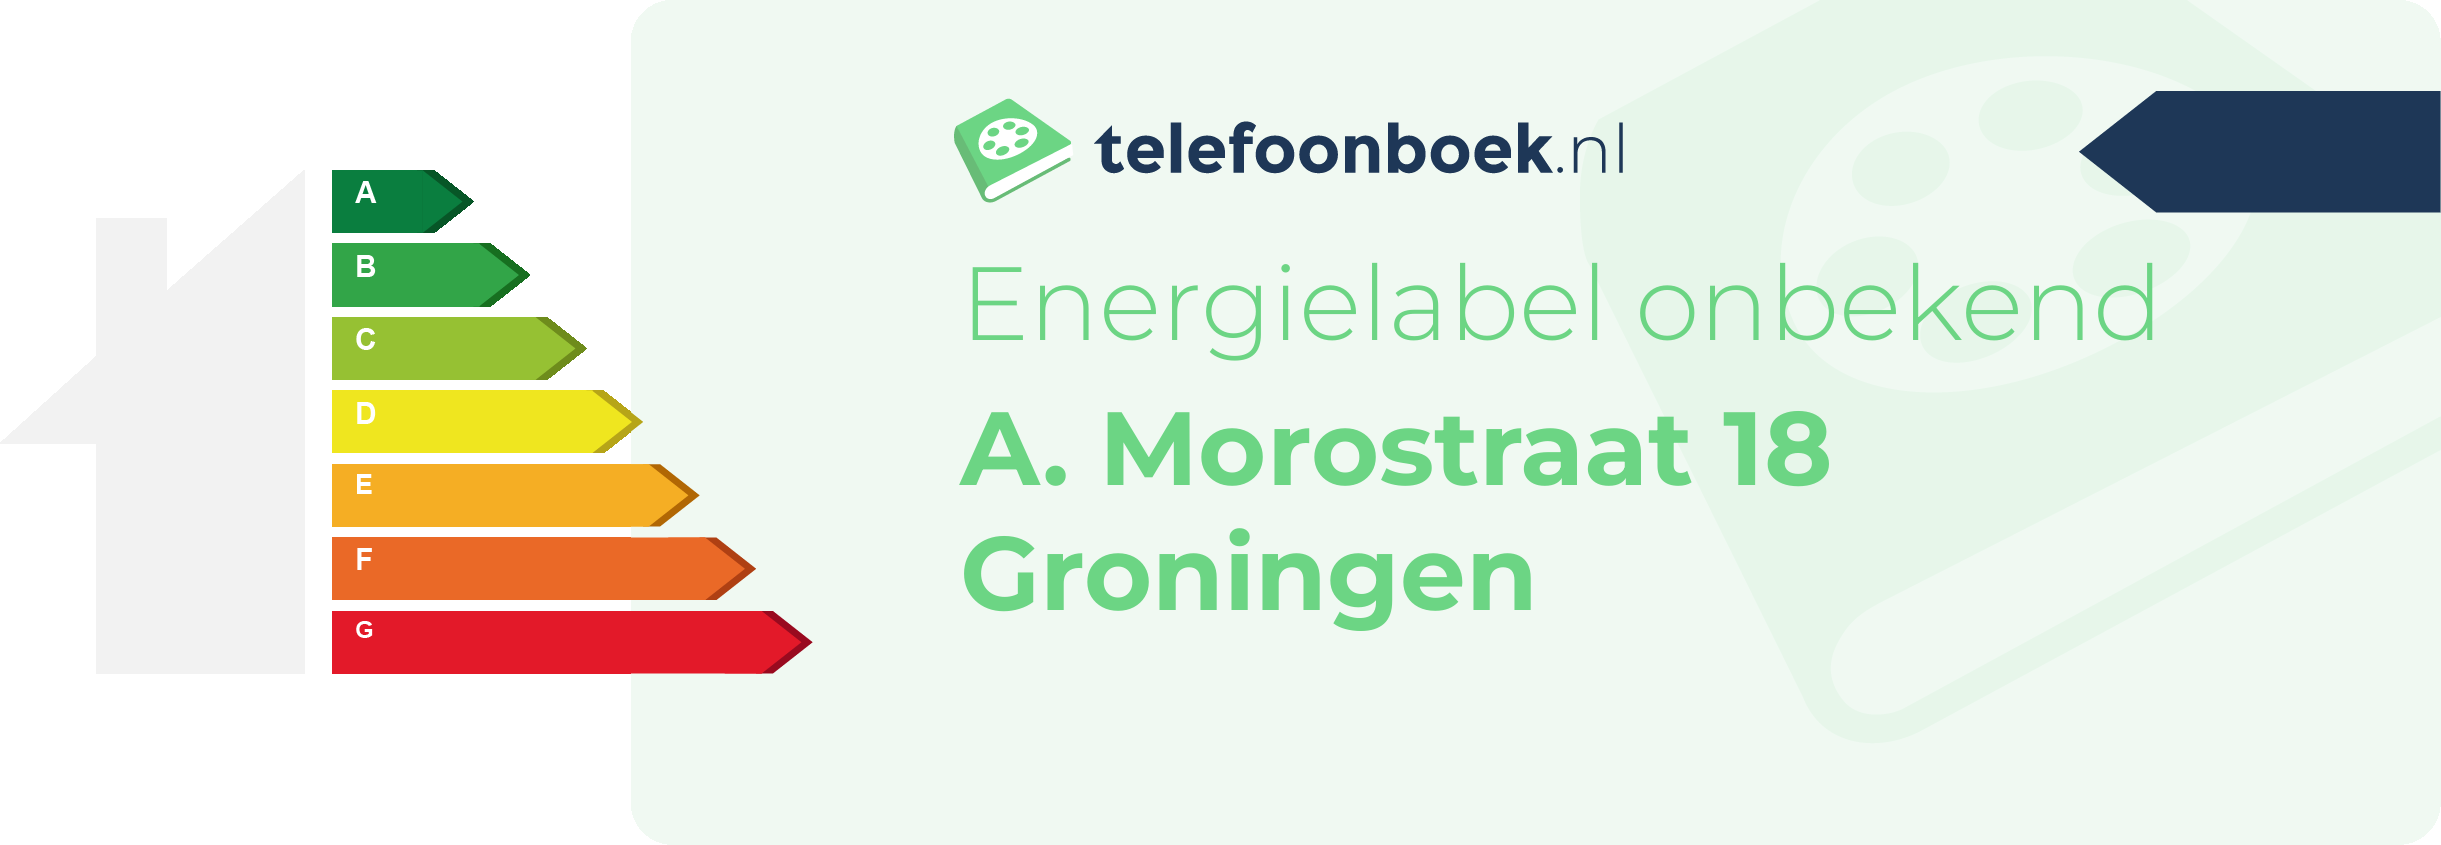 Energielabel A. Morostraat 18 Groningen